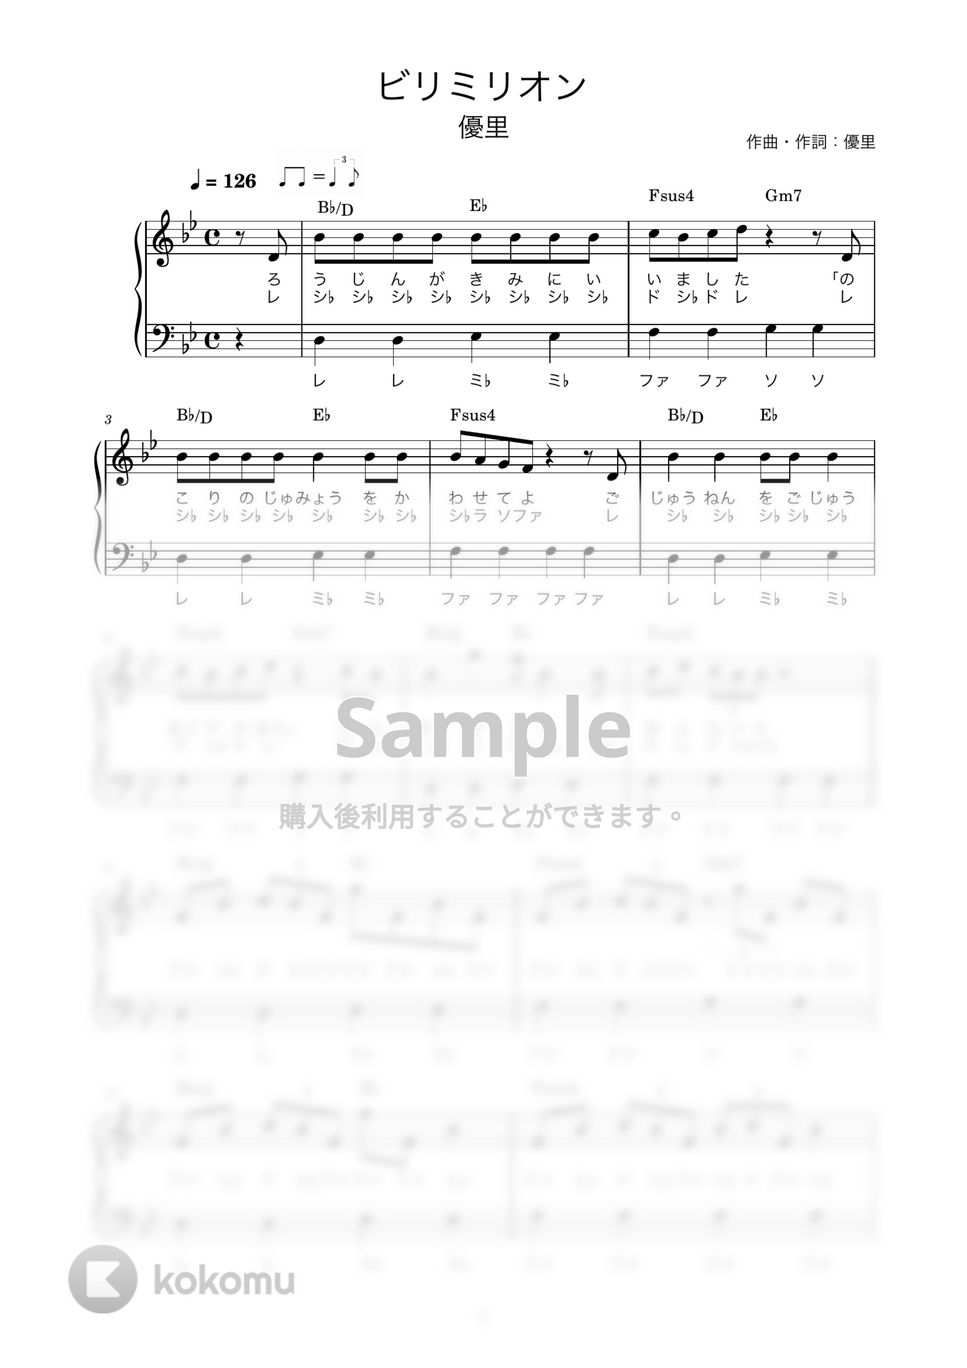 優里 - ビリミリオン (かんたん / 歌詞付き / ドレミ付き / 初心者) by piano.tokyo